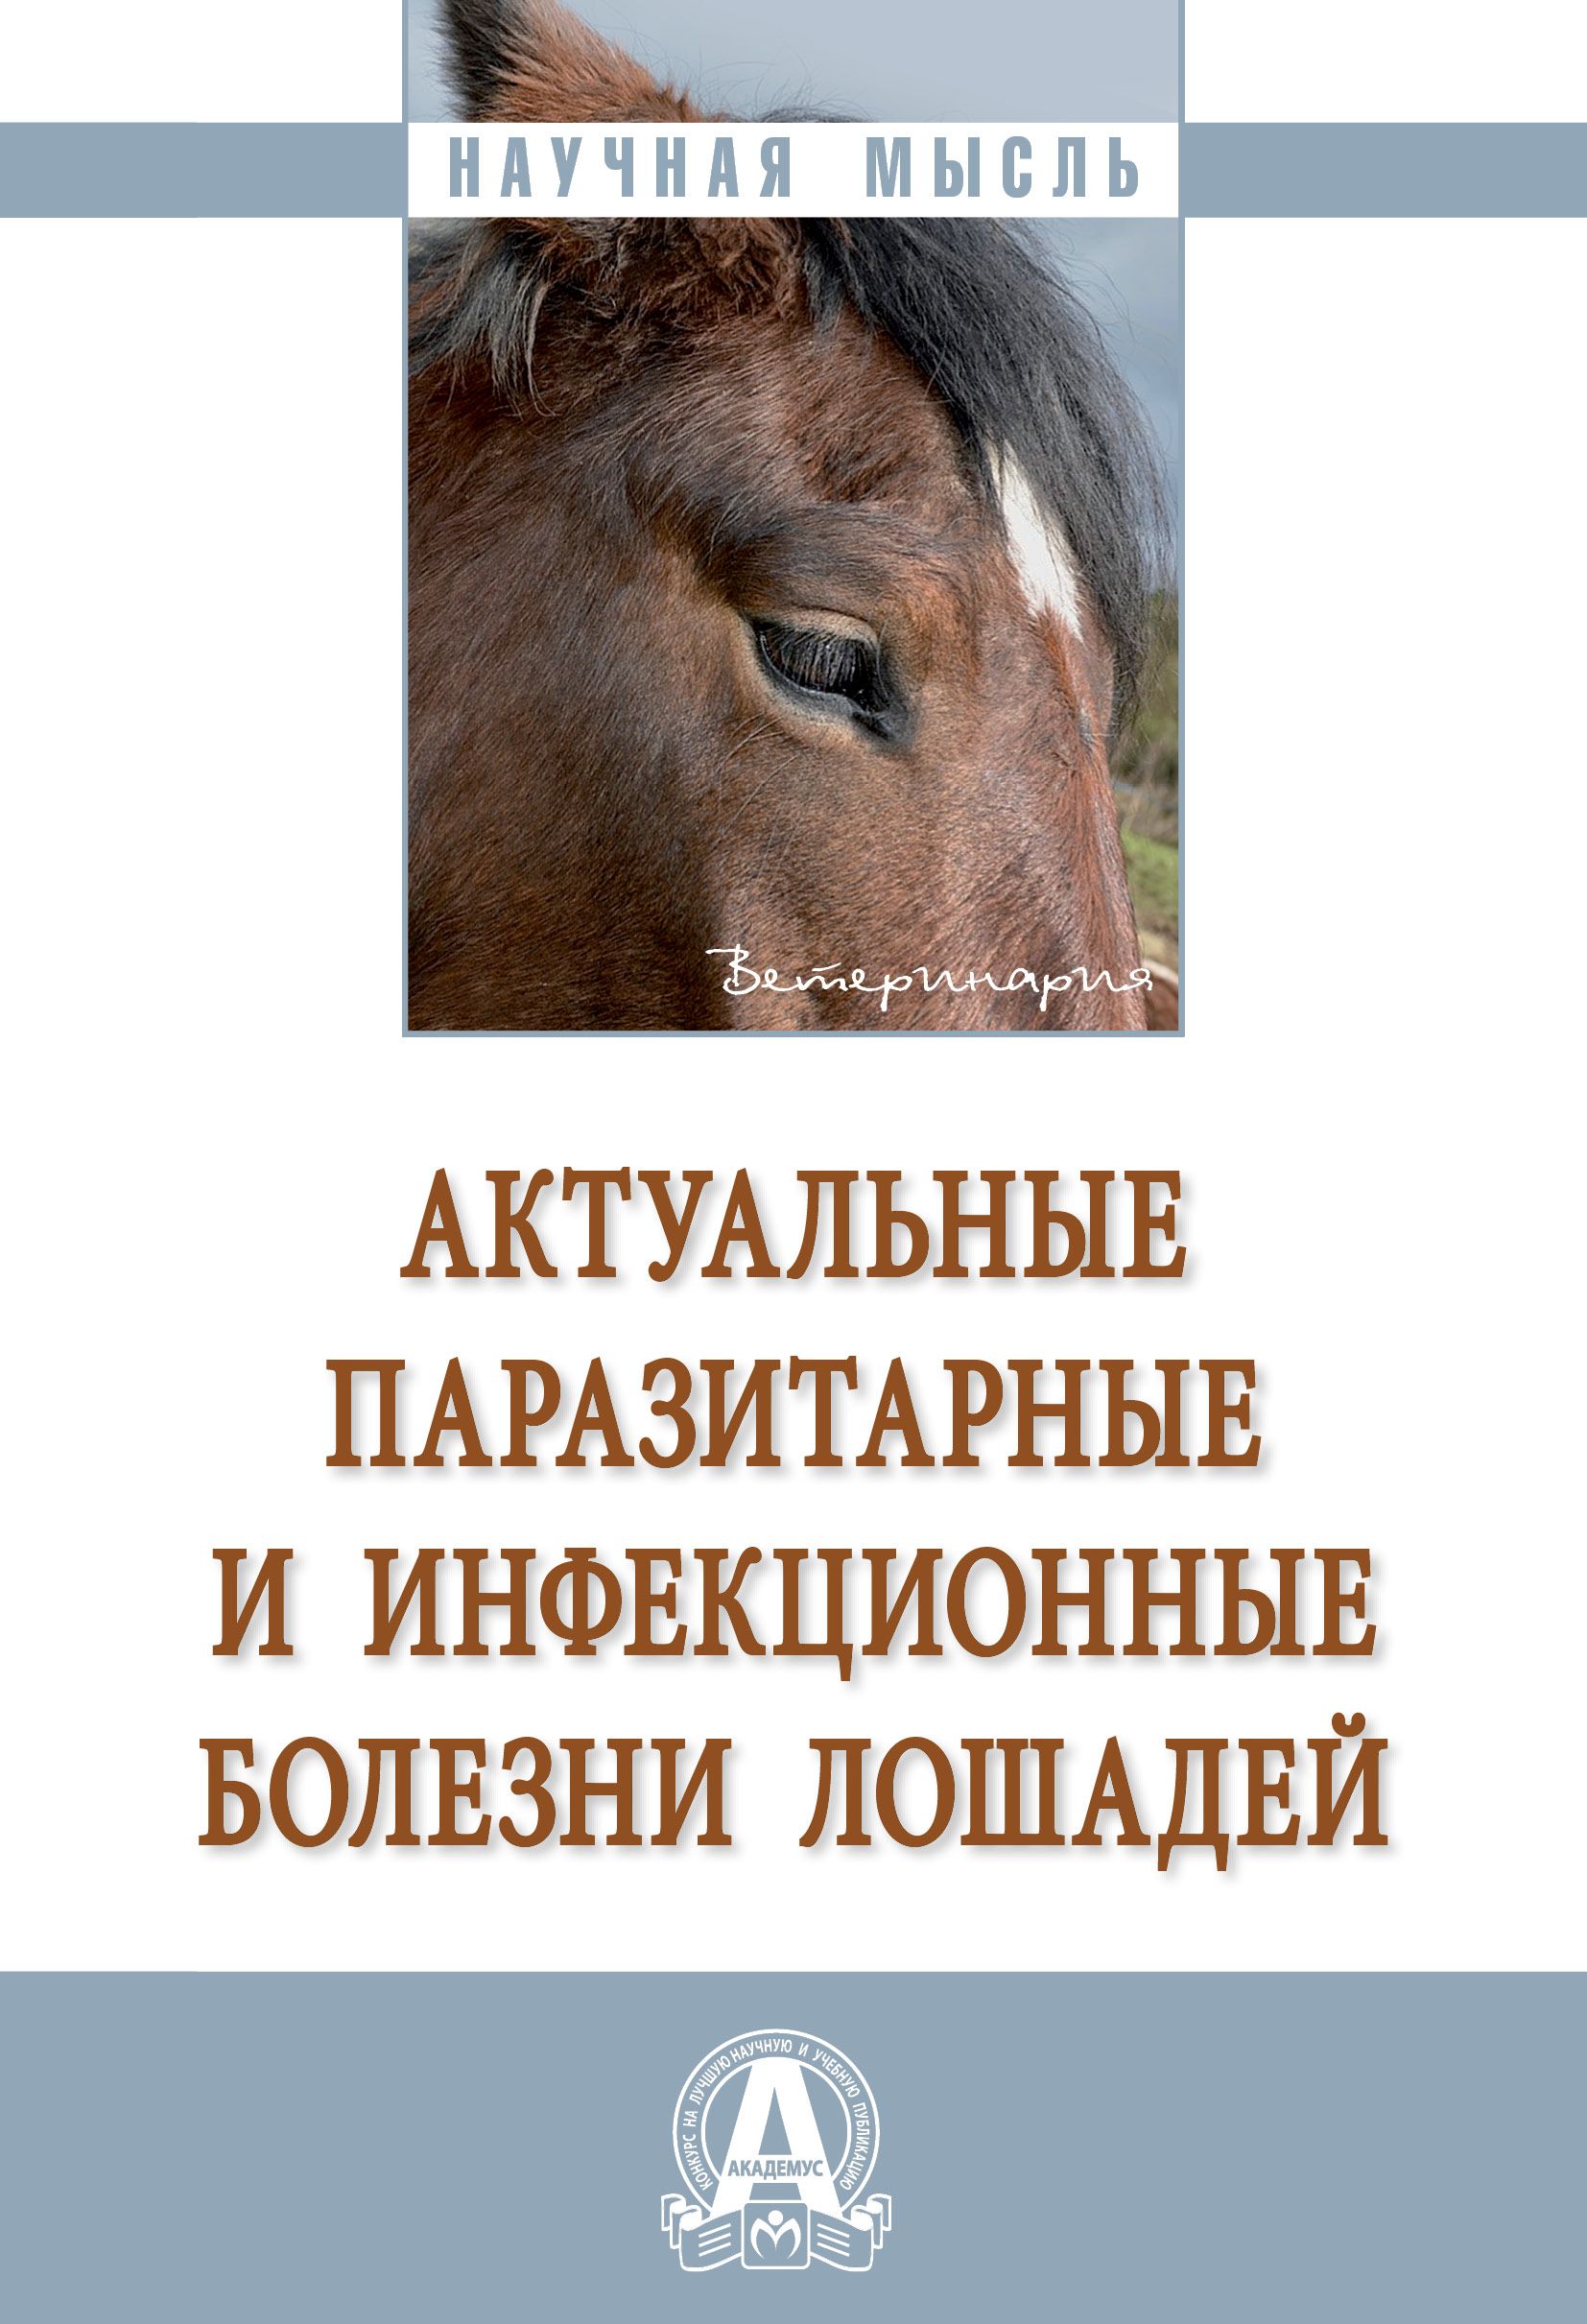 Болезнь лошадей 3. Паразитарные болезни лошадей. Инфекционные болезни лошадей. Паразитарные заболевания лошадей книга.